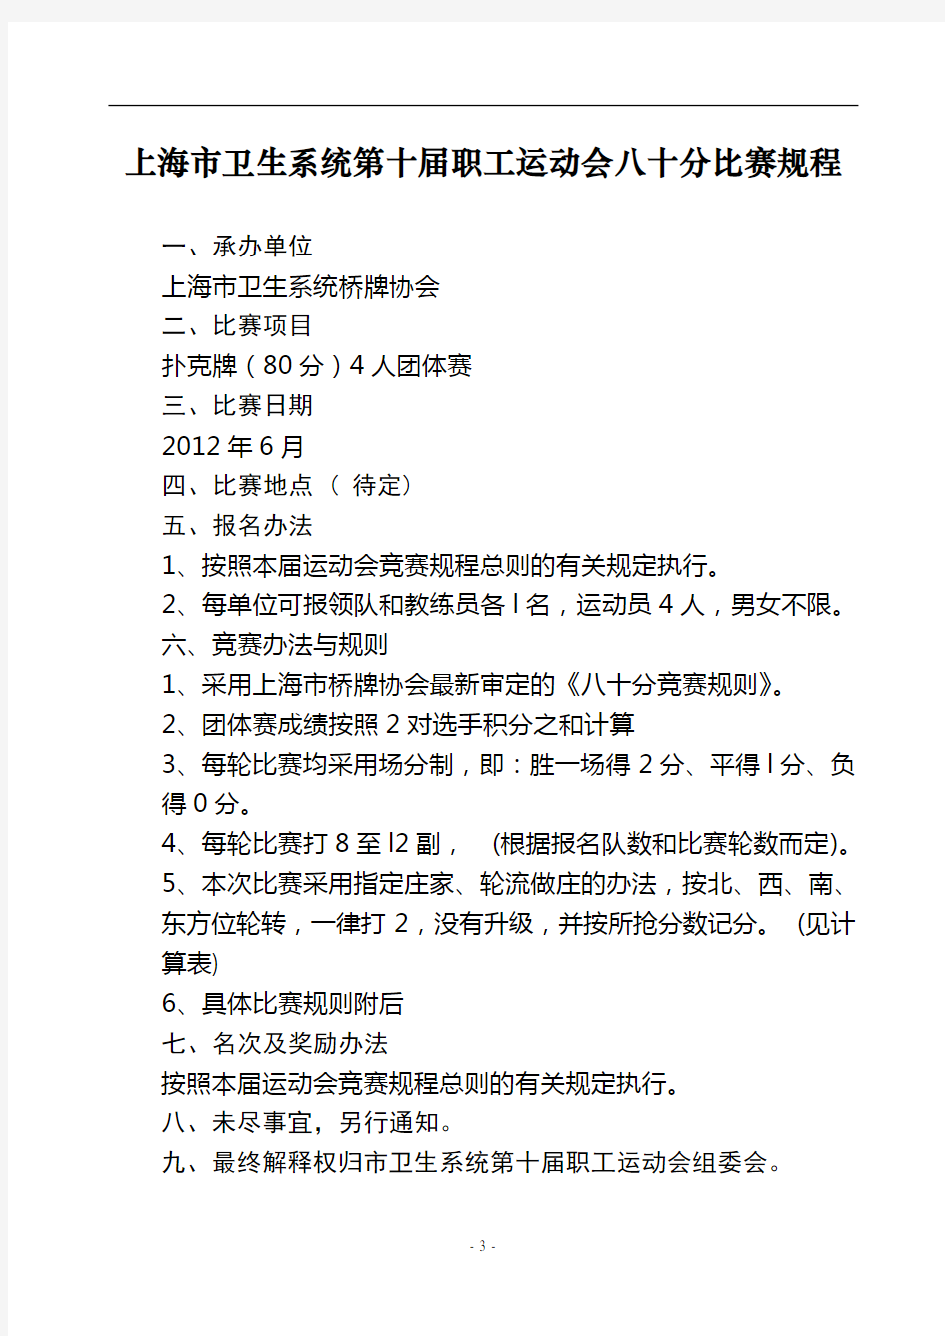 上海市卫生系统第十届职工运动会八十分比赛规程